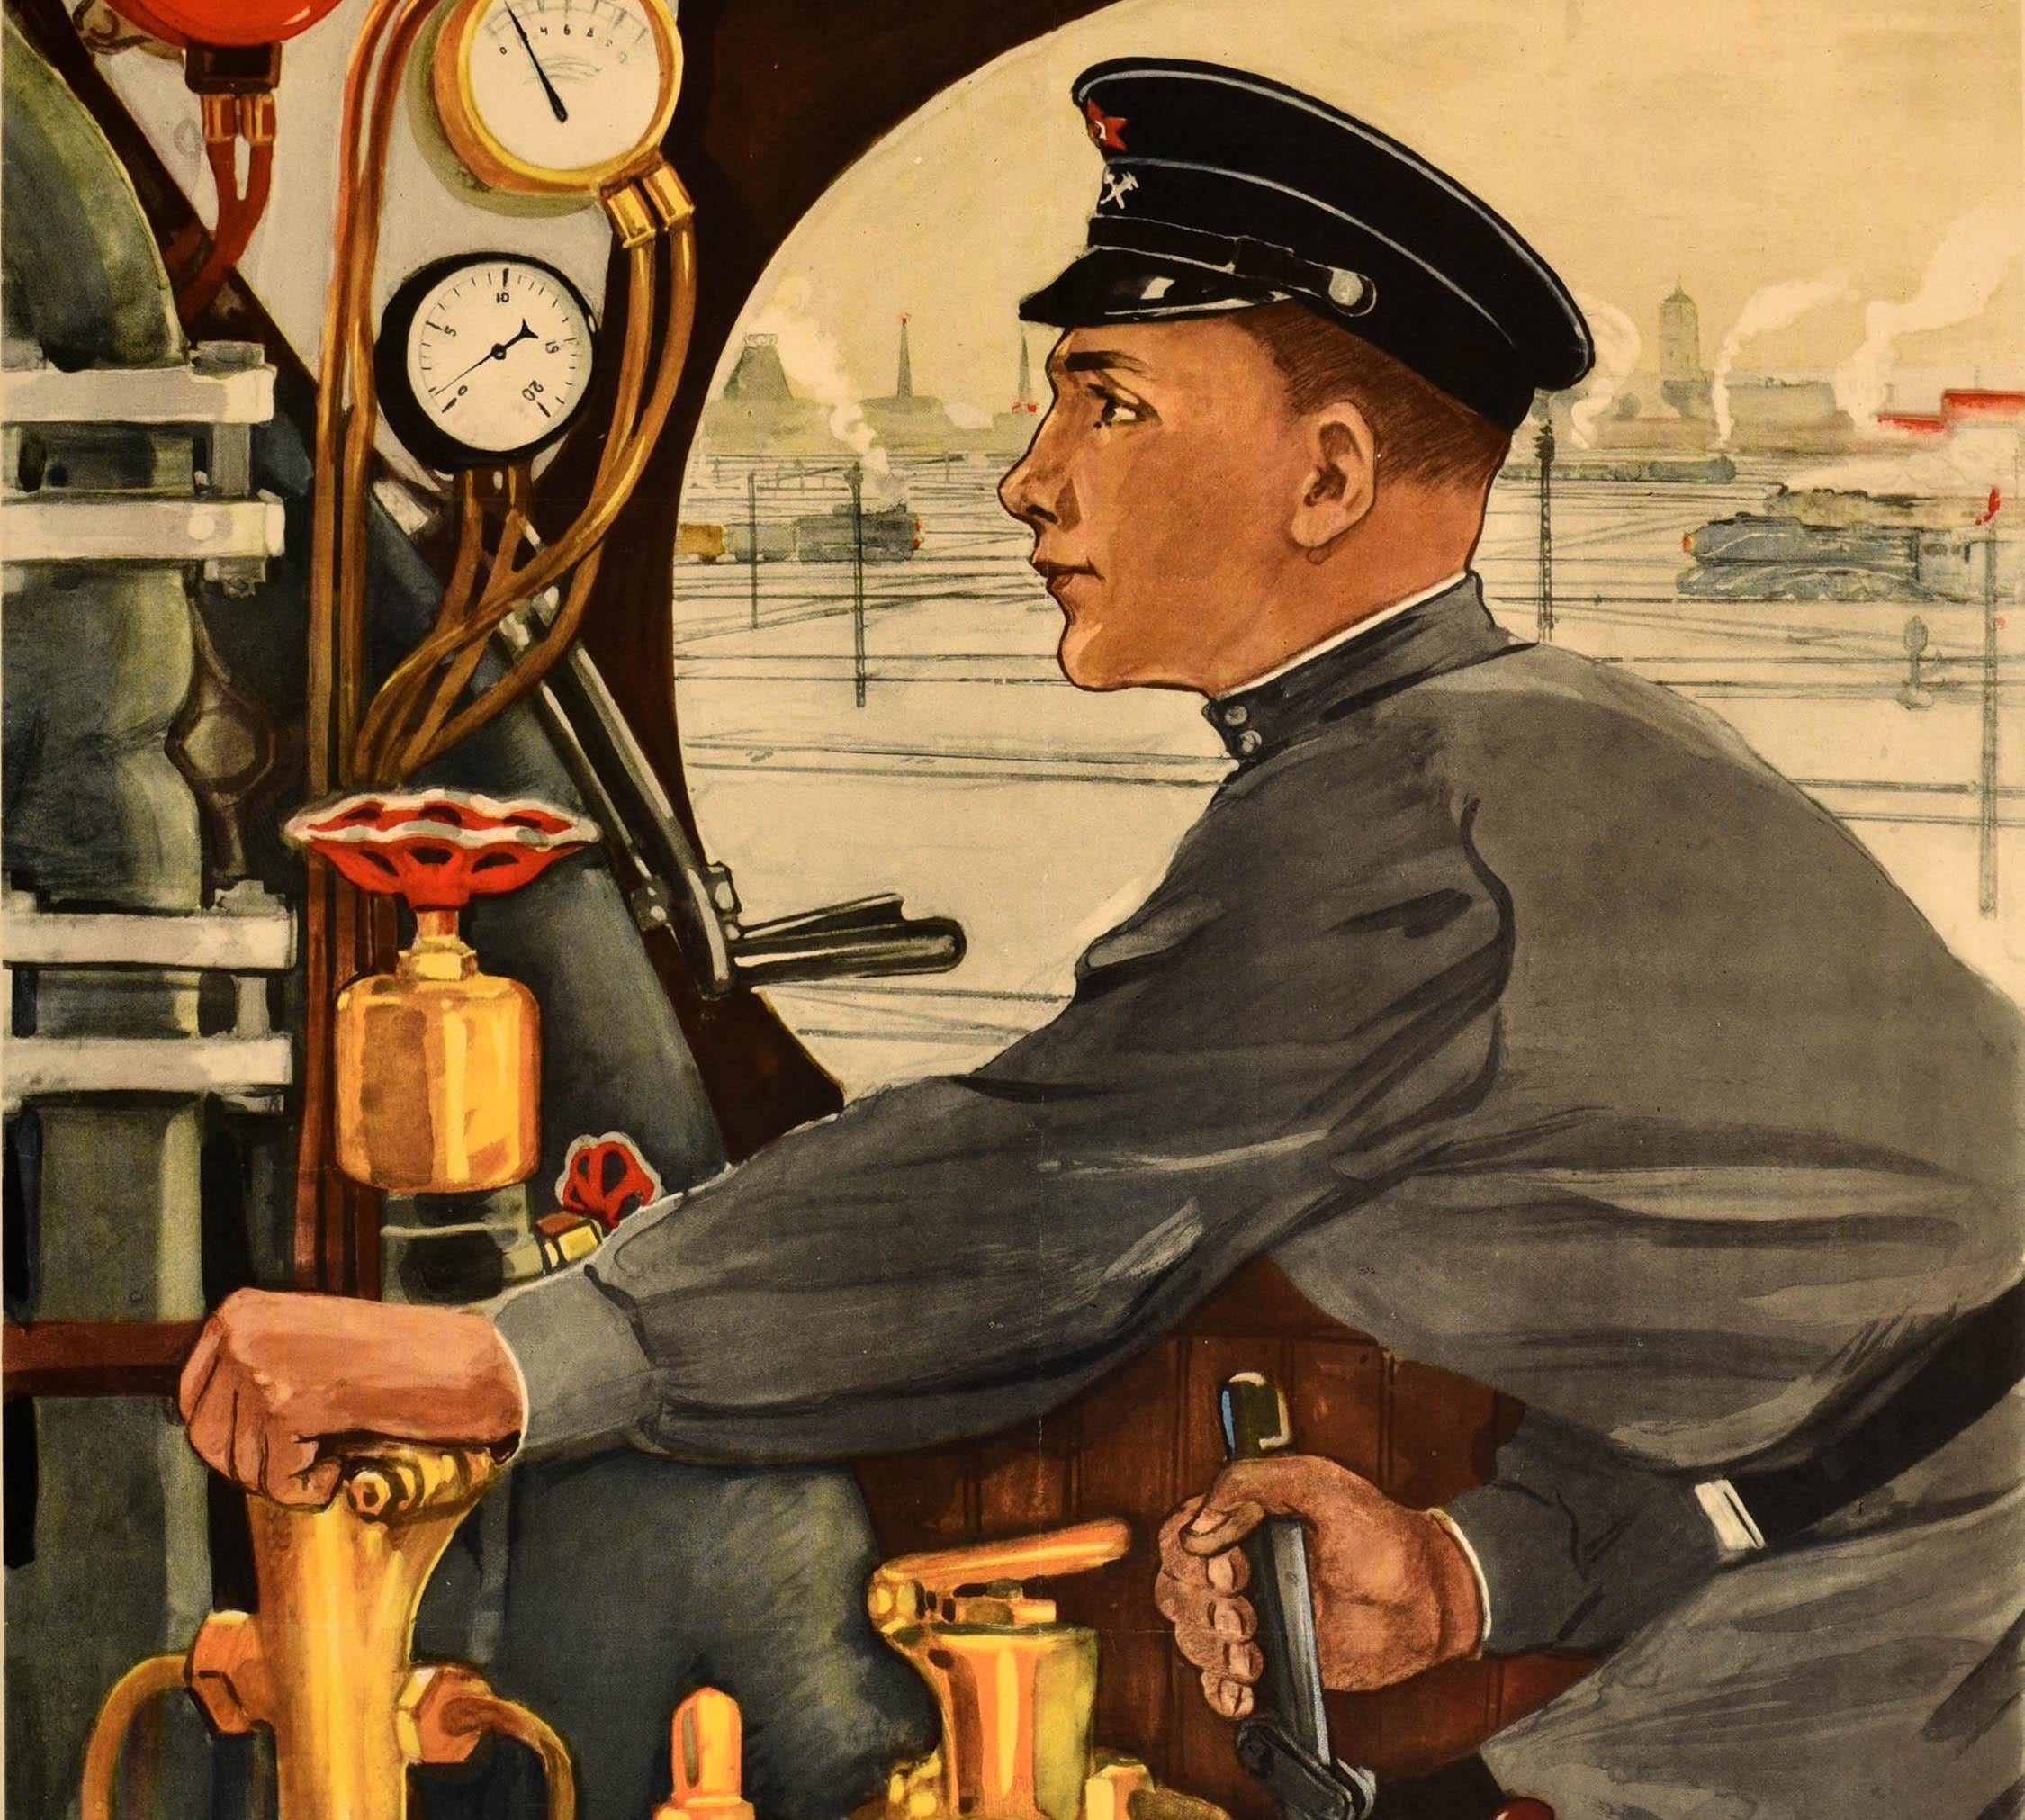 Affiche de propagande soviétique vintage - Je serai conducteur de train ! / ? ??? ? ?????????! Superbe illustration d'un jeune conducteur de train en uniforme actionnant les commandes, avec une vue sur d'autres trains sur les lignes ferroviaires et